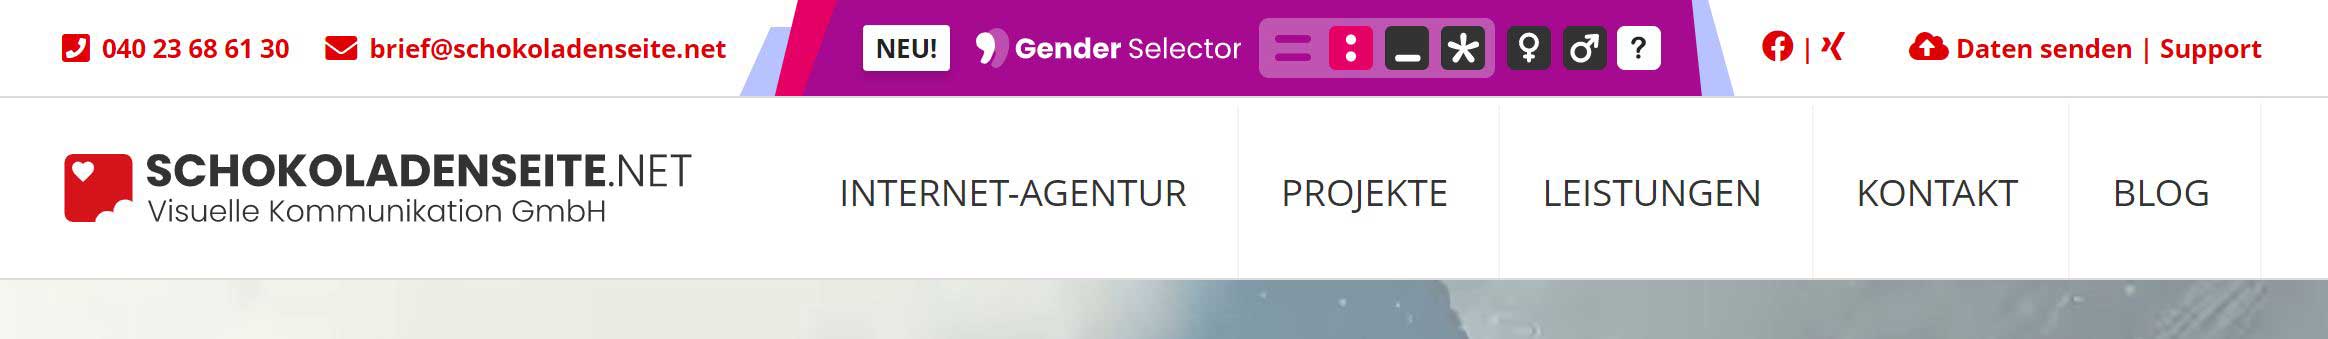 Screenshot von Gender Selector auf Webseite, für gendergerechtes Ansprechen von Nutzer auf Ihrer Webseite